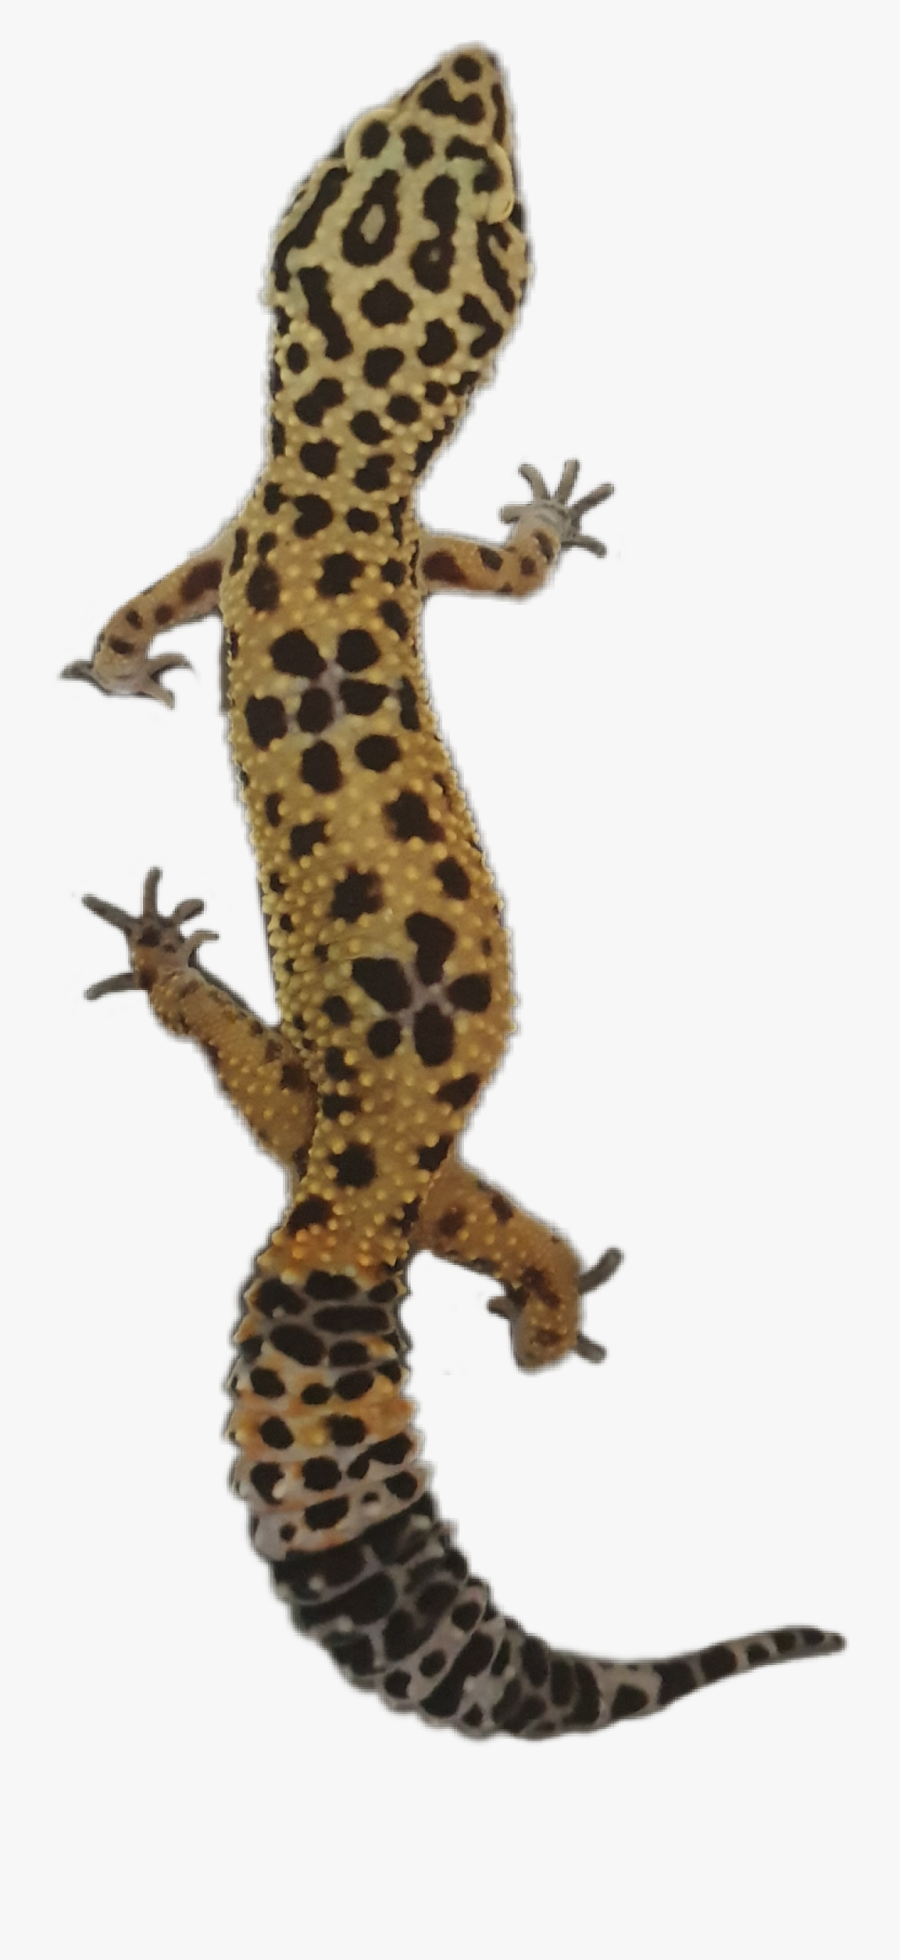 #gecko #geckos #geckolove #lizard #lizards #cute #pet - Turkish Gecko, Transparent Clipart